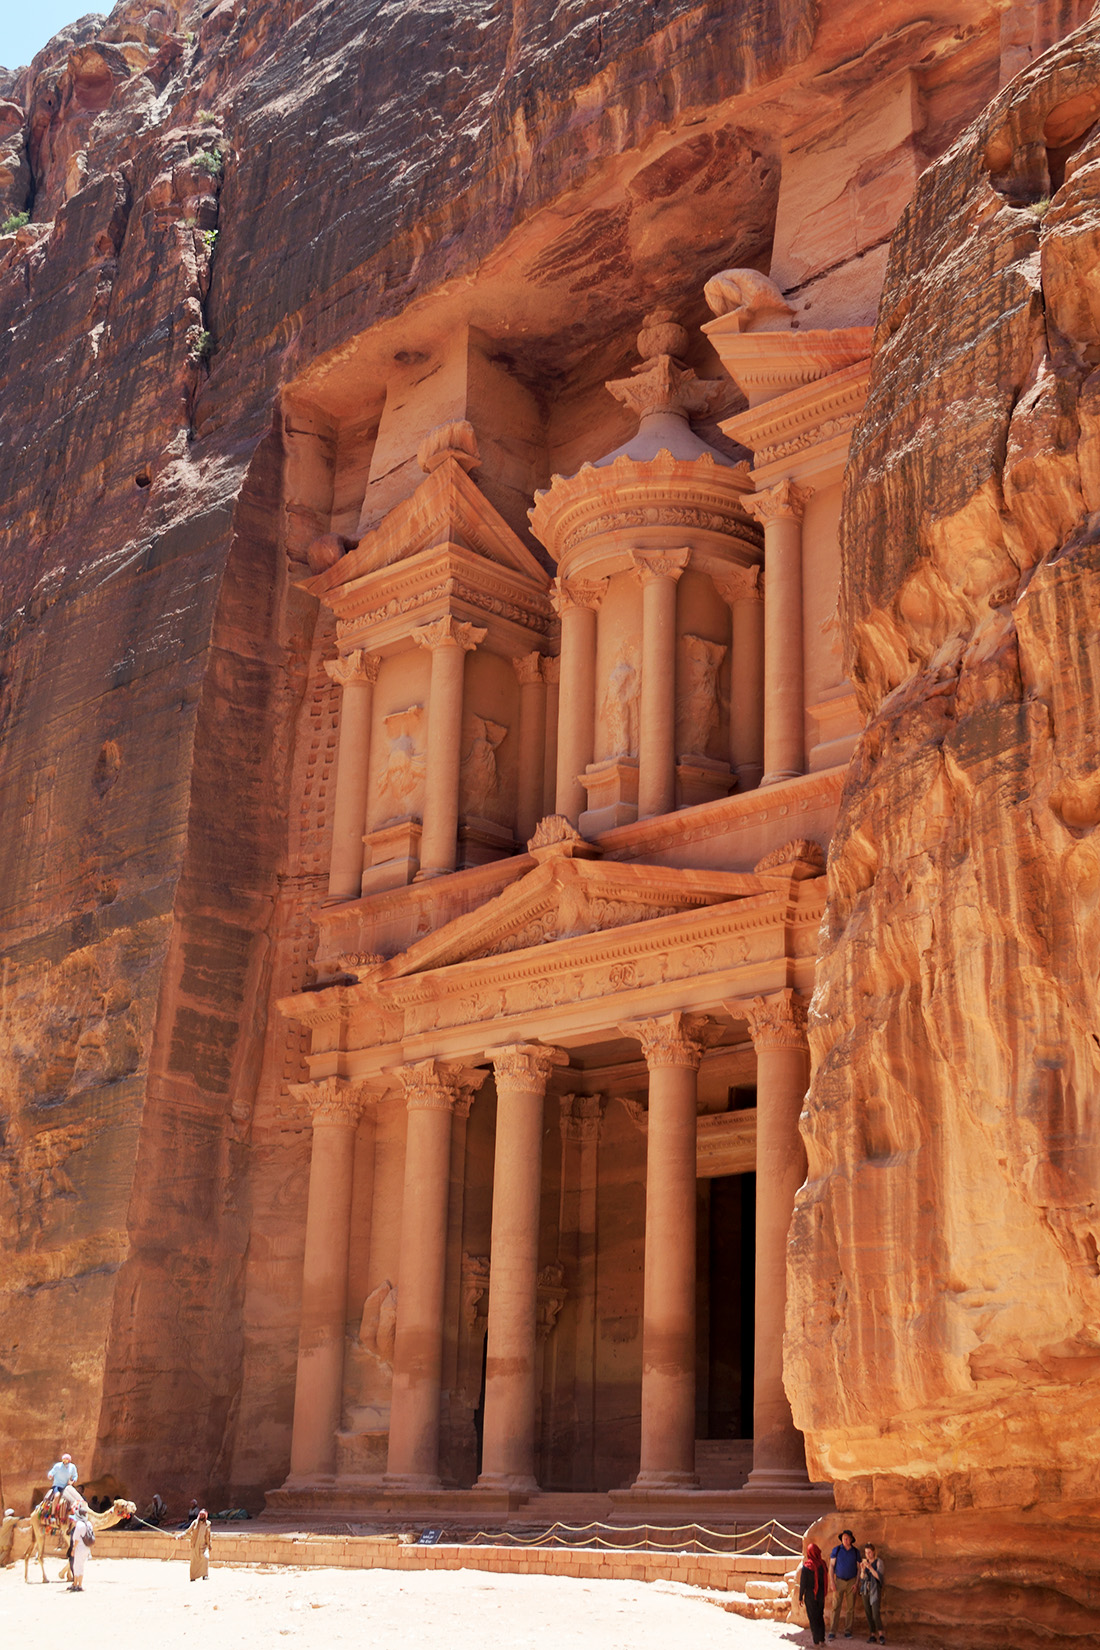 Tras 30 minutos caminando se llega a la primera maravilla y seguramente el monumento más bonito de Petra: el Tesoro.